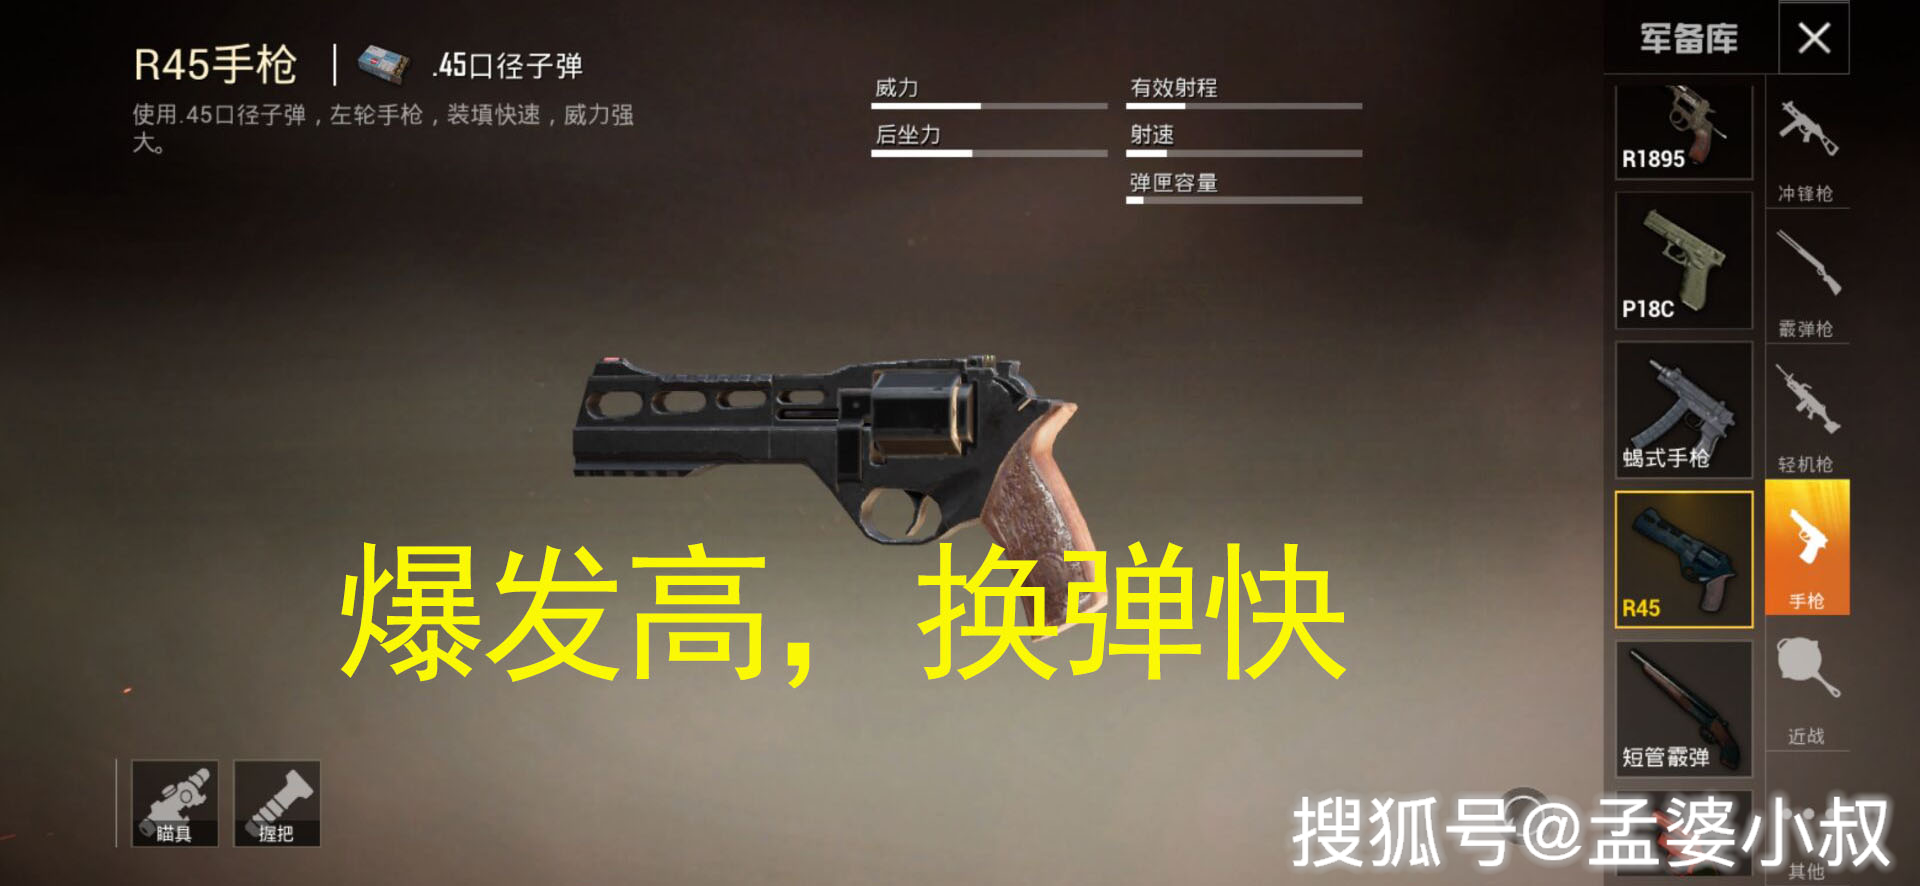 r45是游戏中常见的手枪之一,就是大家俗称的"左轮,使用的是45口径的